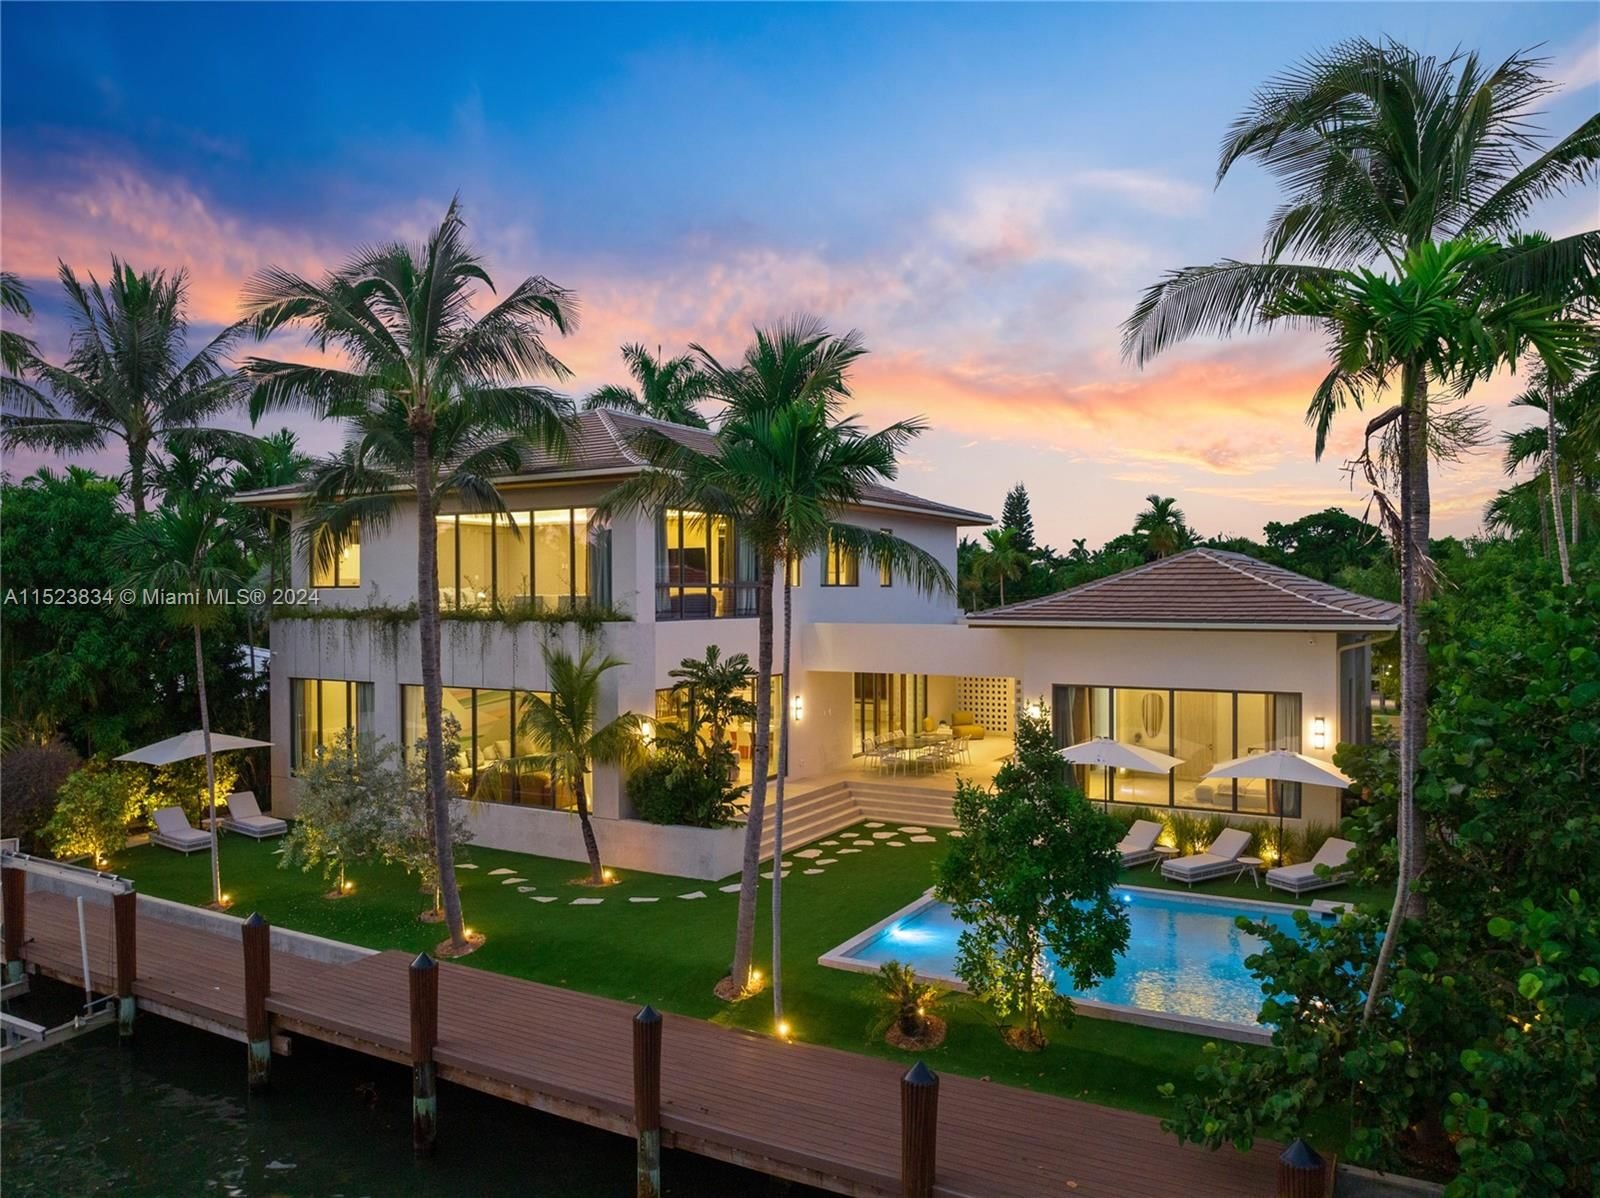 Real estate property located at 1200 87th St, Miami-Dade County, DAVIS HARBOR, Miami, FL